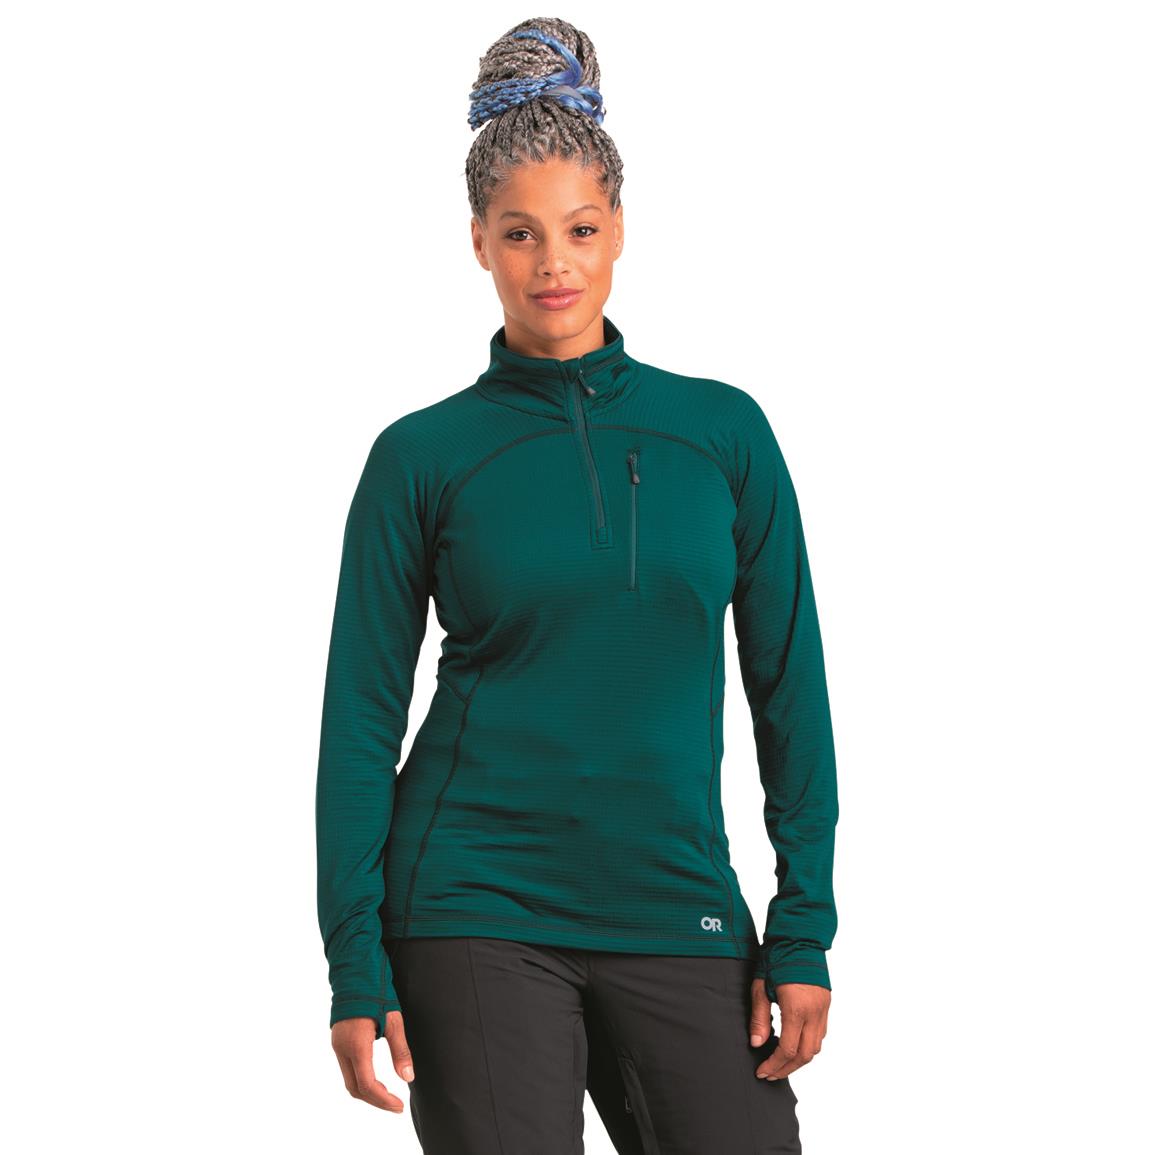 Outdoor Research Women's Vigor Quarter-zip Sweater, Treeline